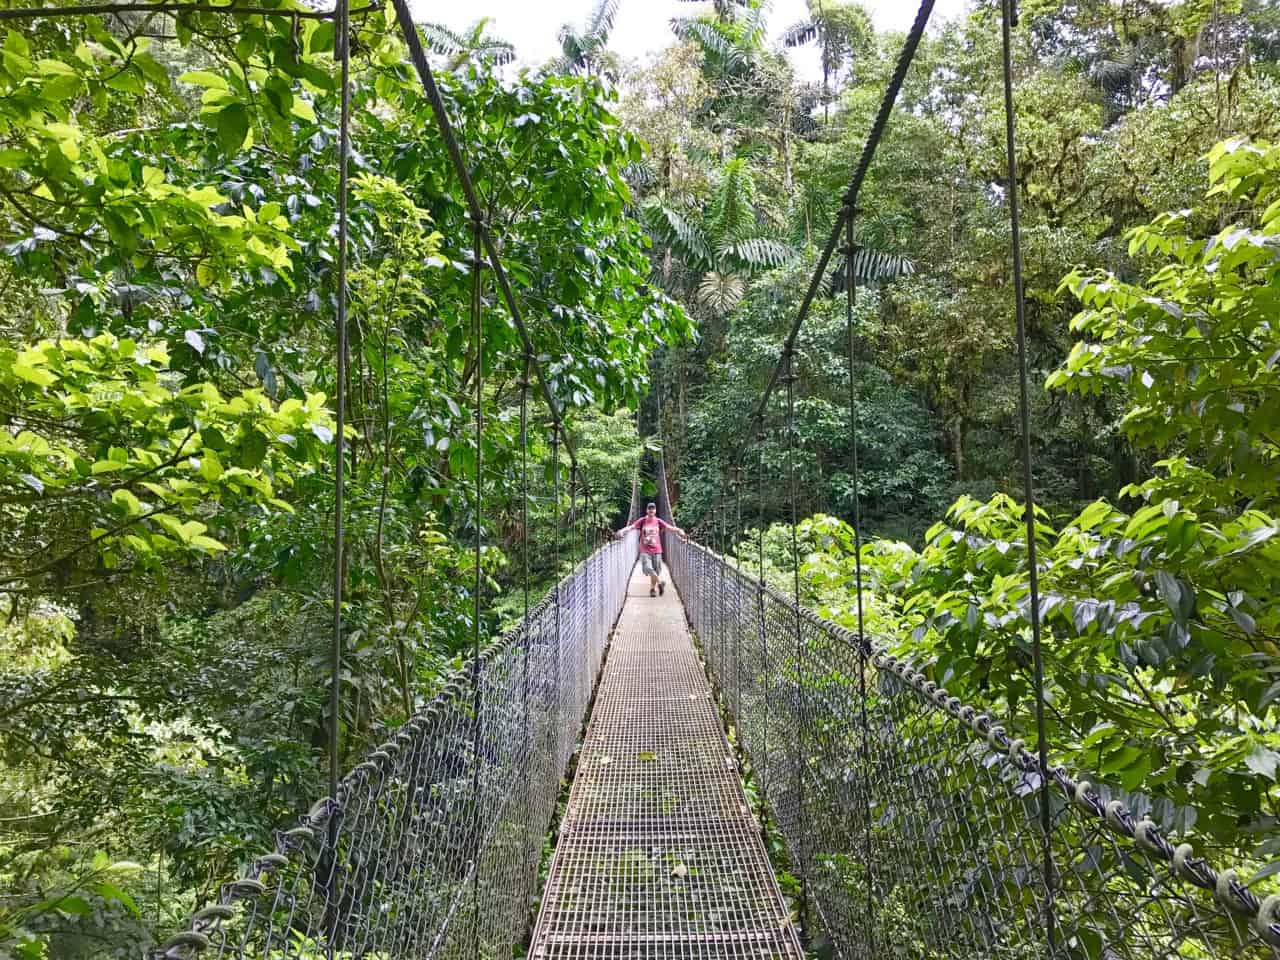 John está em uma ponte suspensa acima do dossel em Mistico, um parque na Costa Rica.